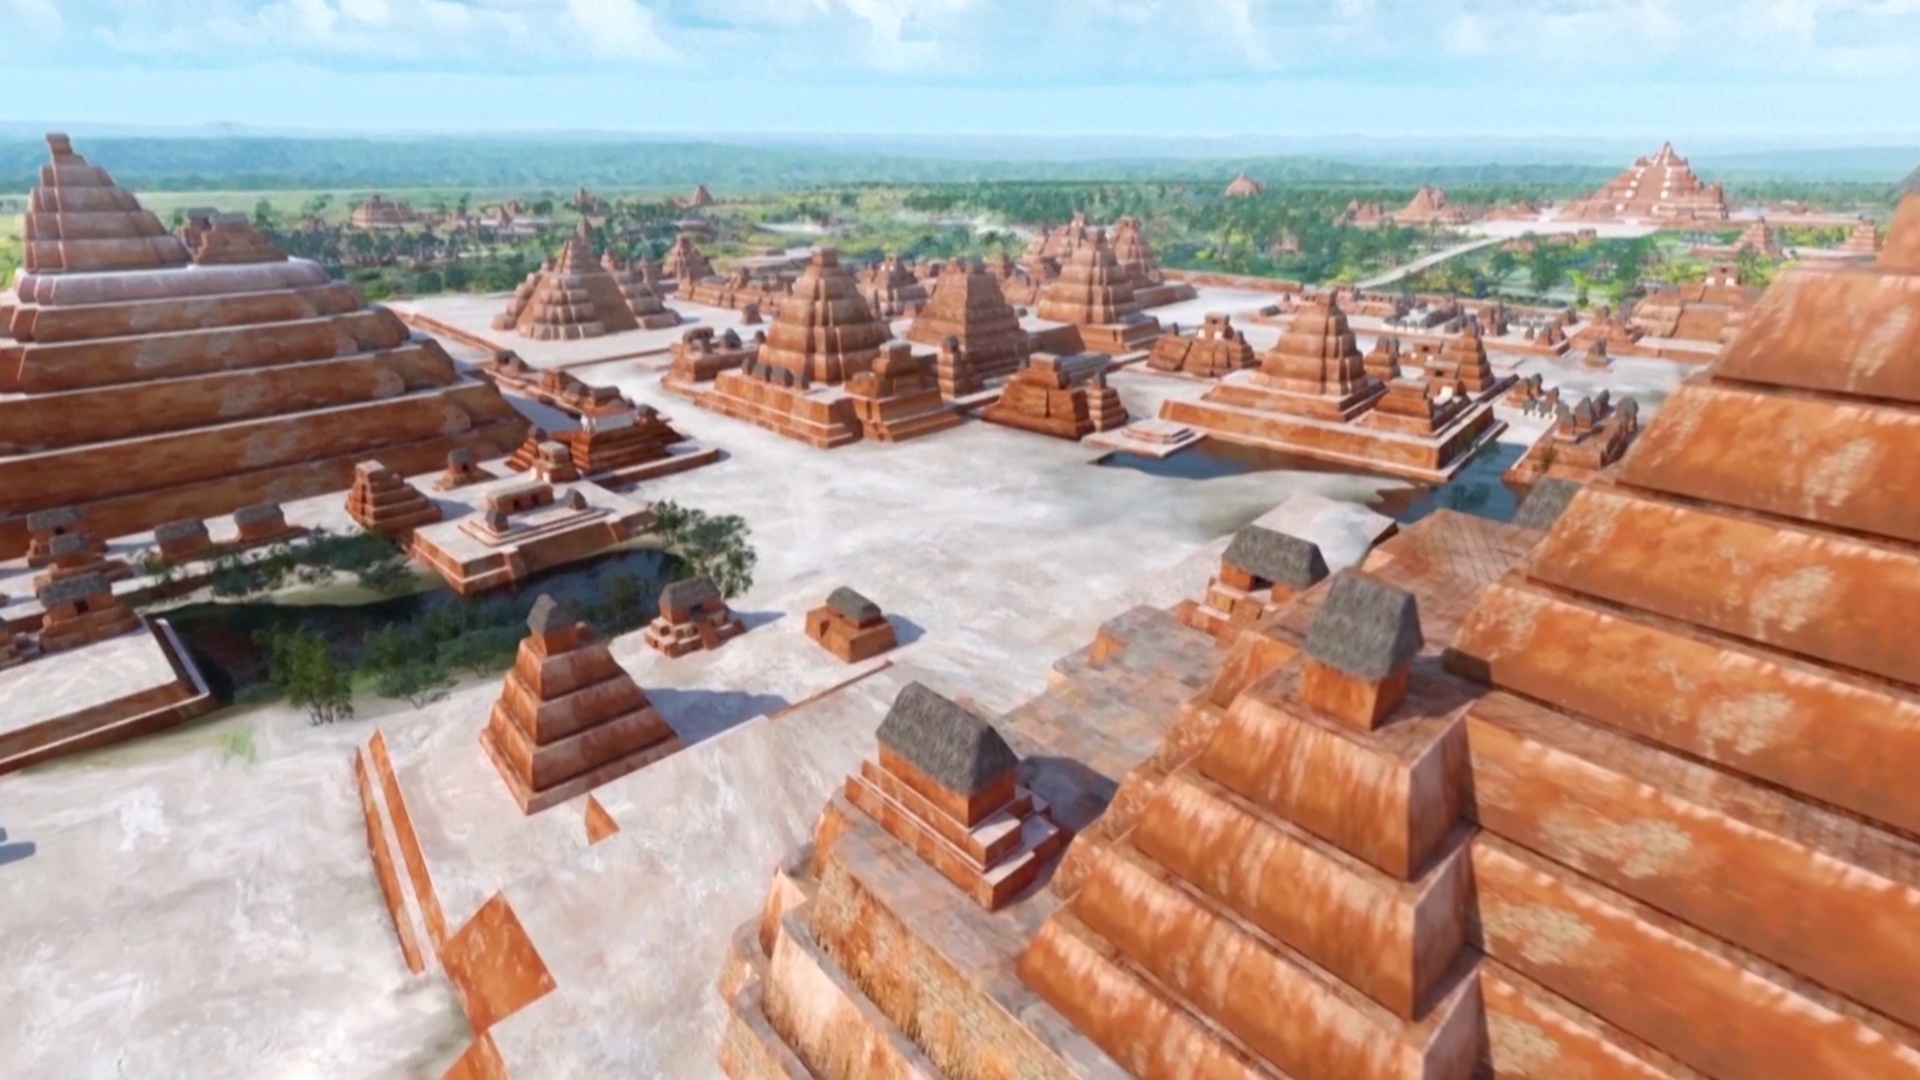 Находка в древнем городе майя открывает новые тайны